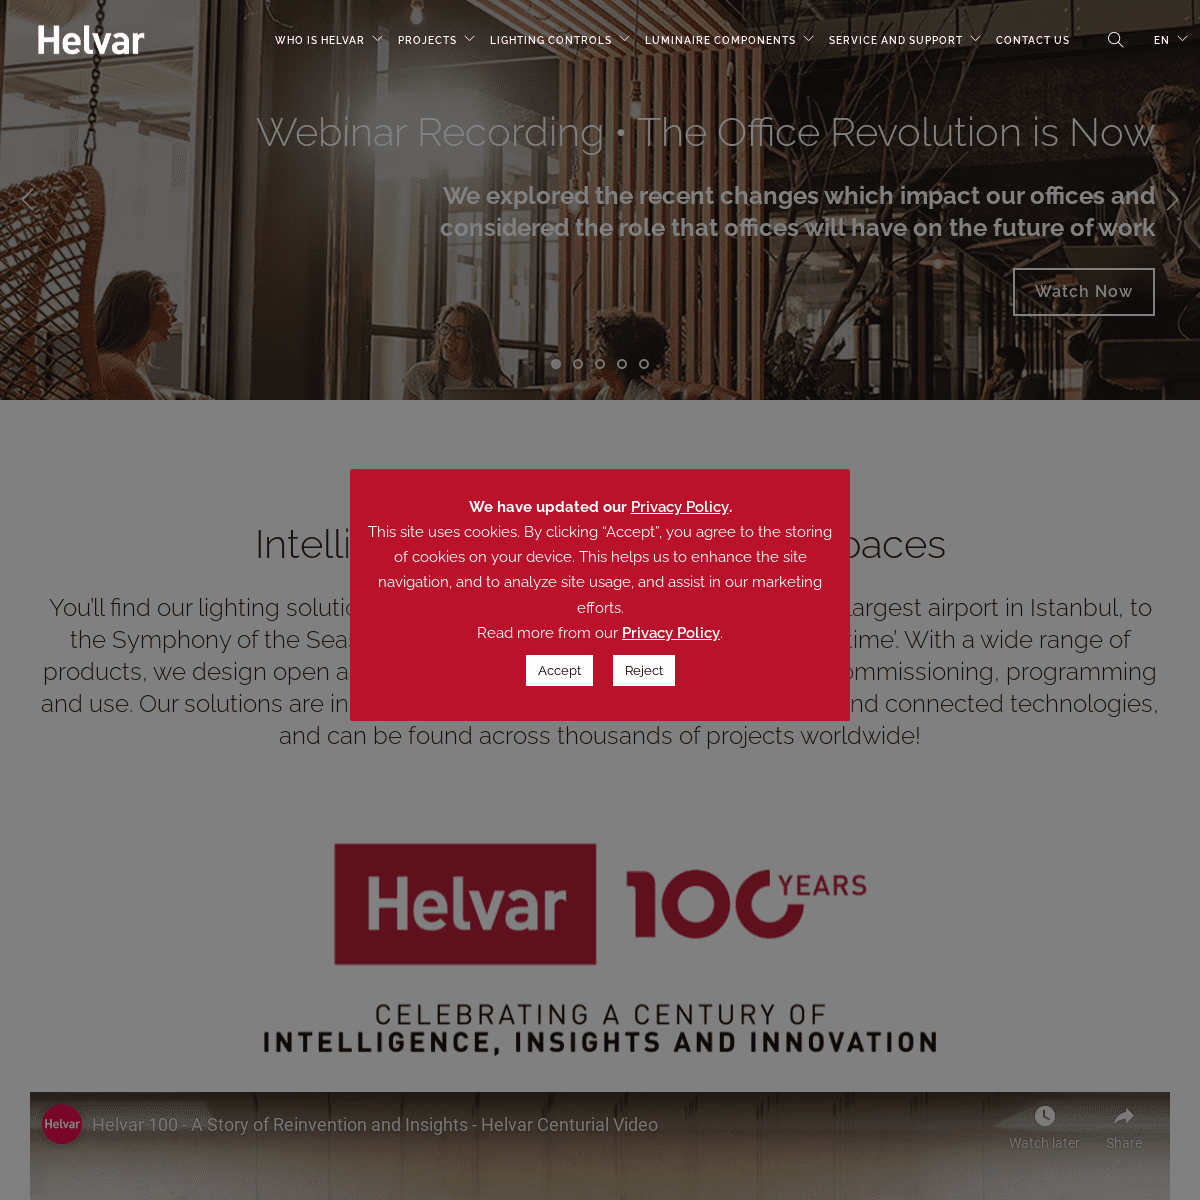 A complete backup of https://helvar.com